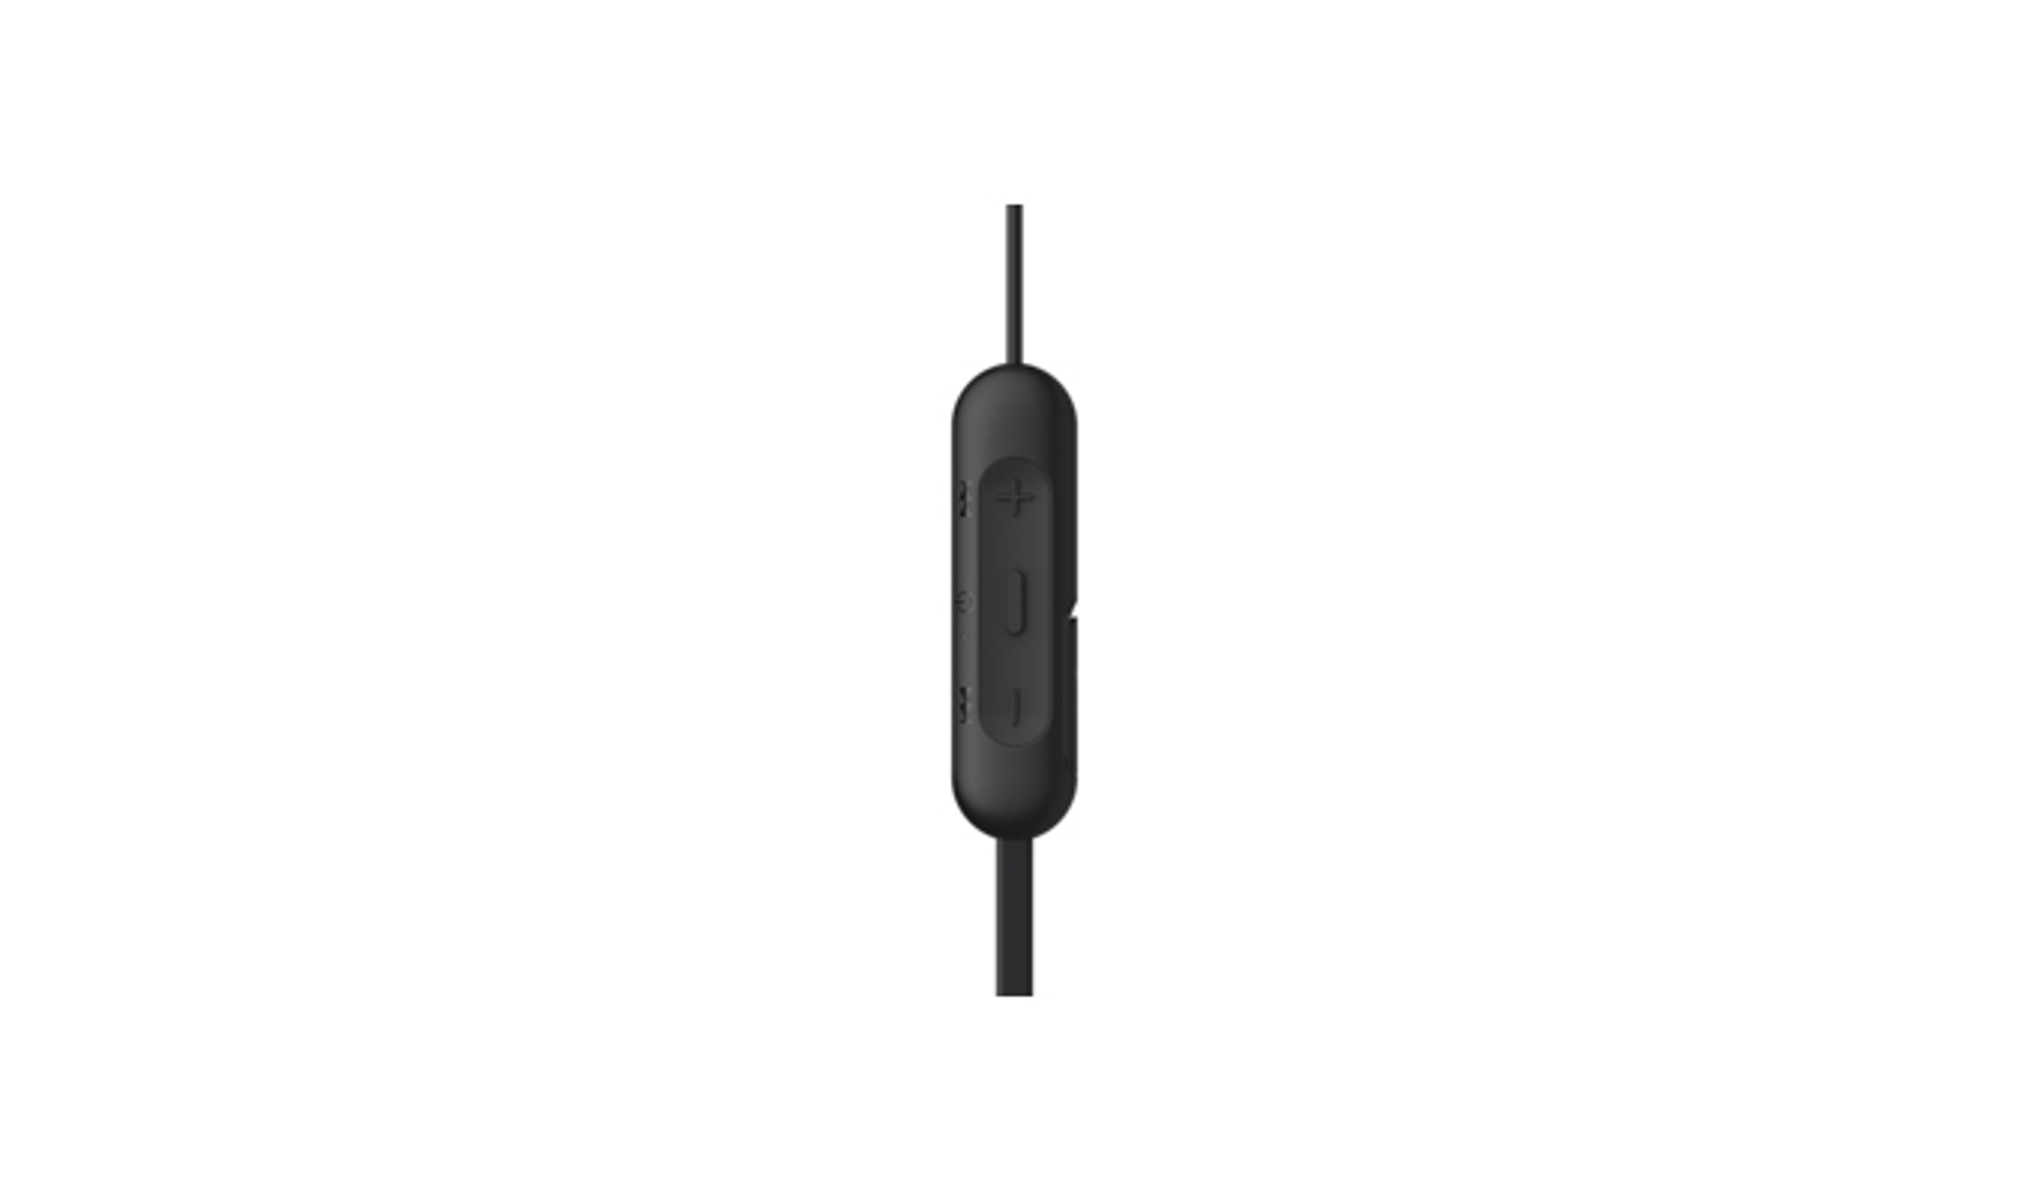 WI-C200, SONY Kopfhörer Bluetooth schwarz In-ear